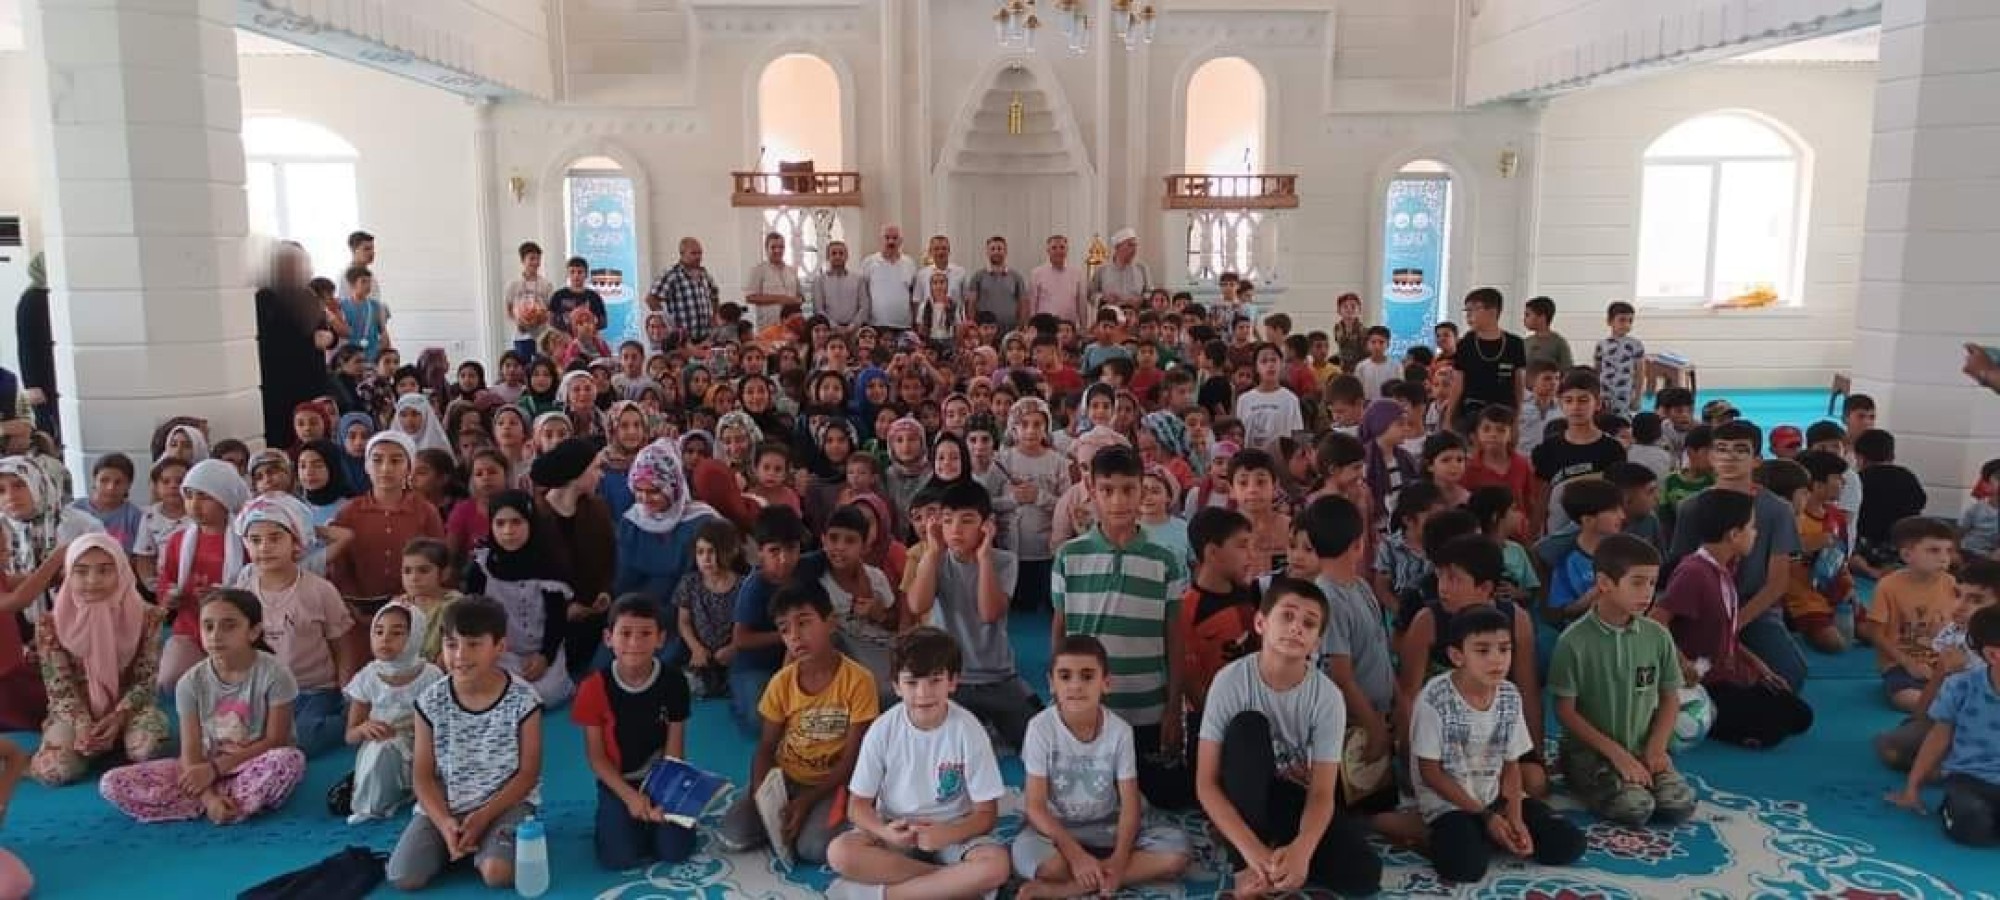 Urfa’da  Kur'an kursu öğrencileri hem eğleniyor hem de öğreniyor;